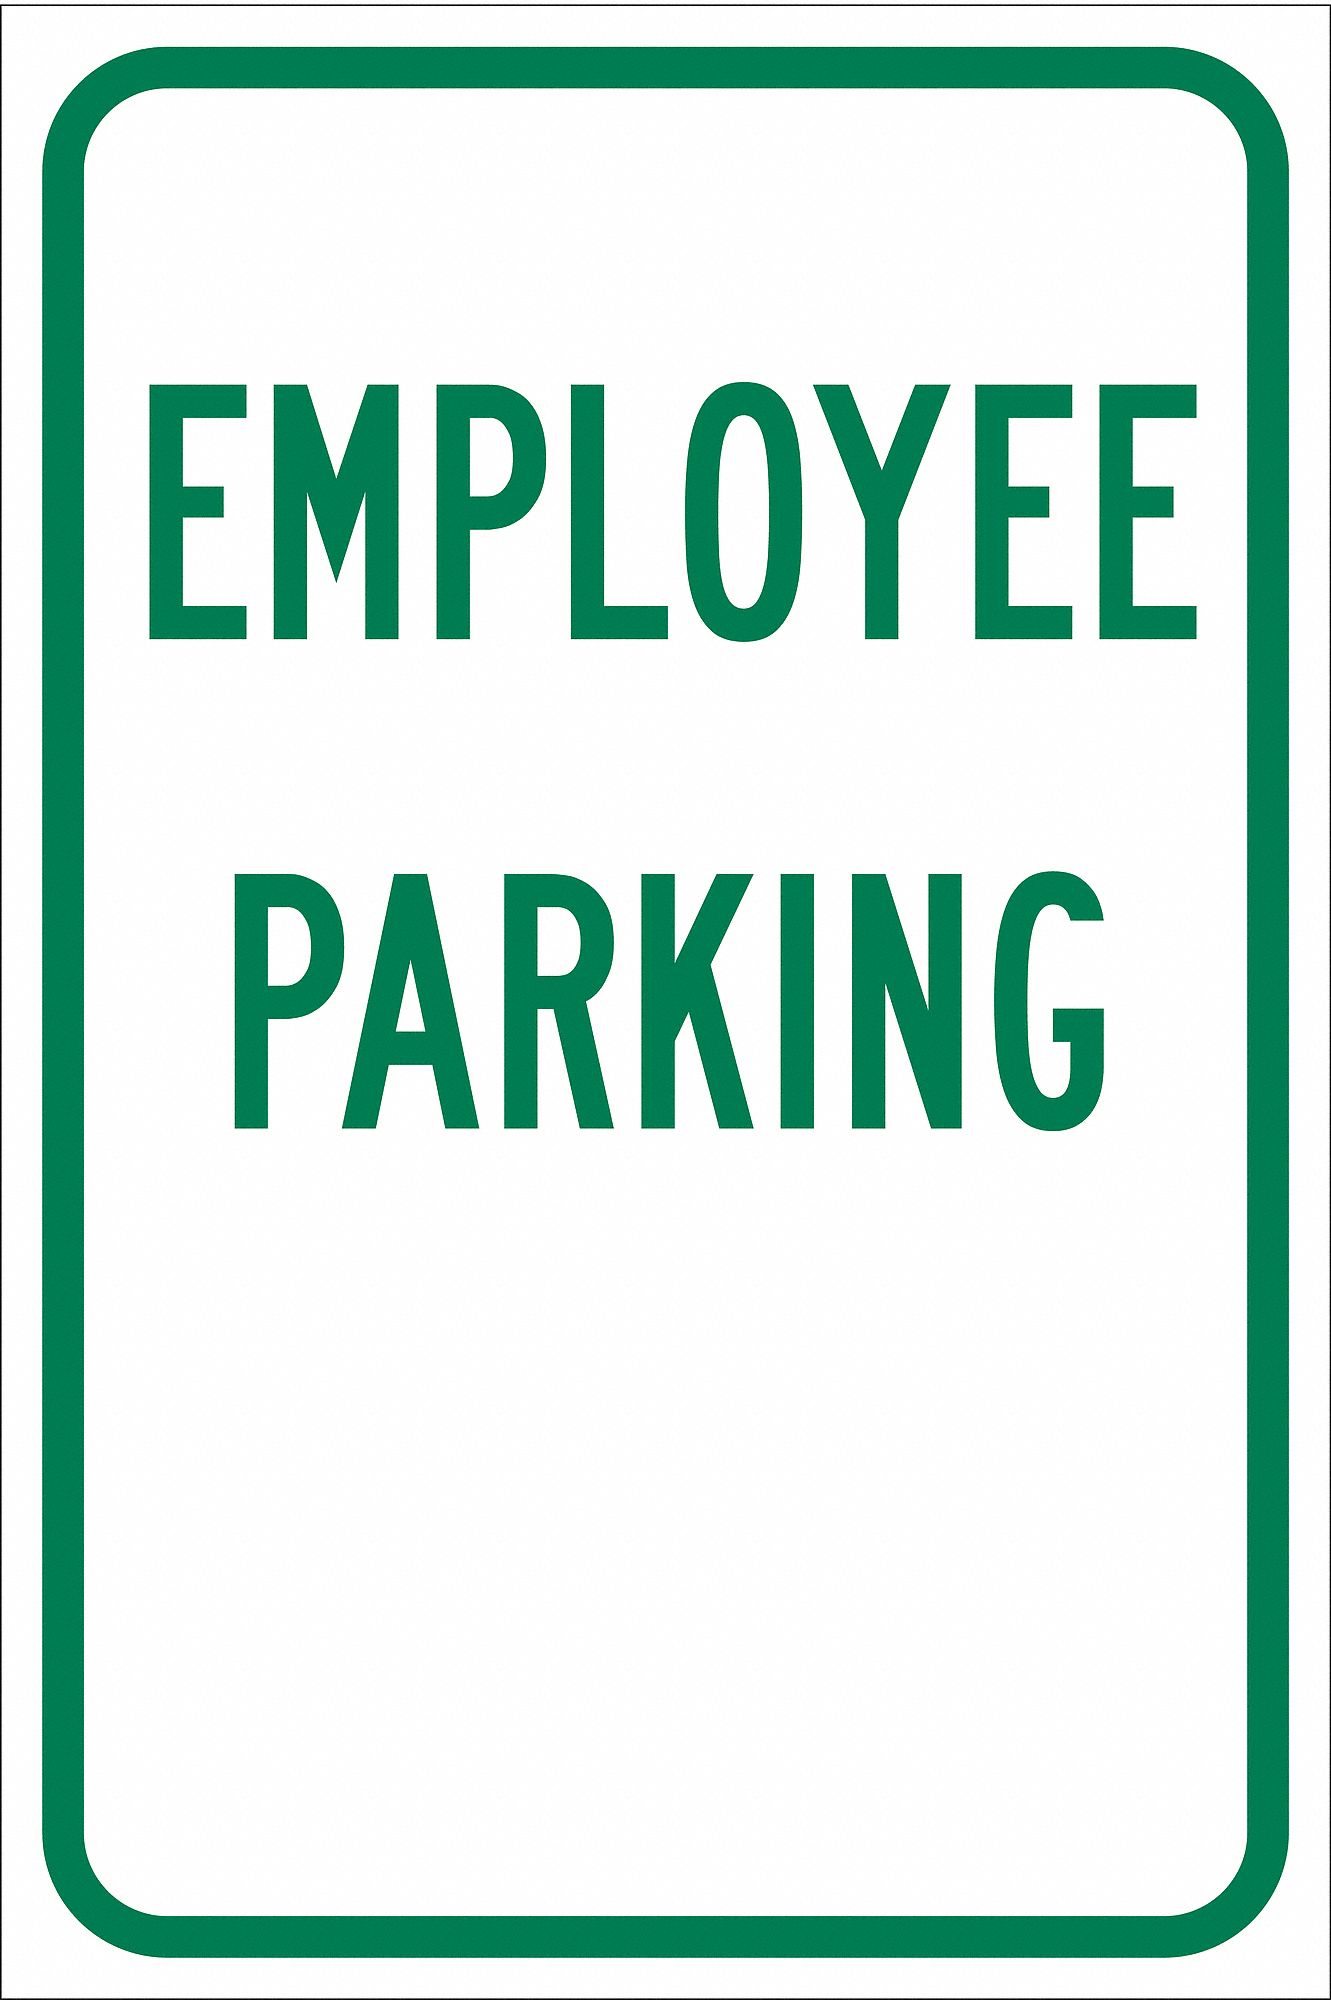 TextEmployee Parking Engineer Grade Aluminum, Parking Sign Height 18